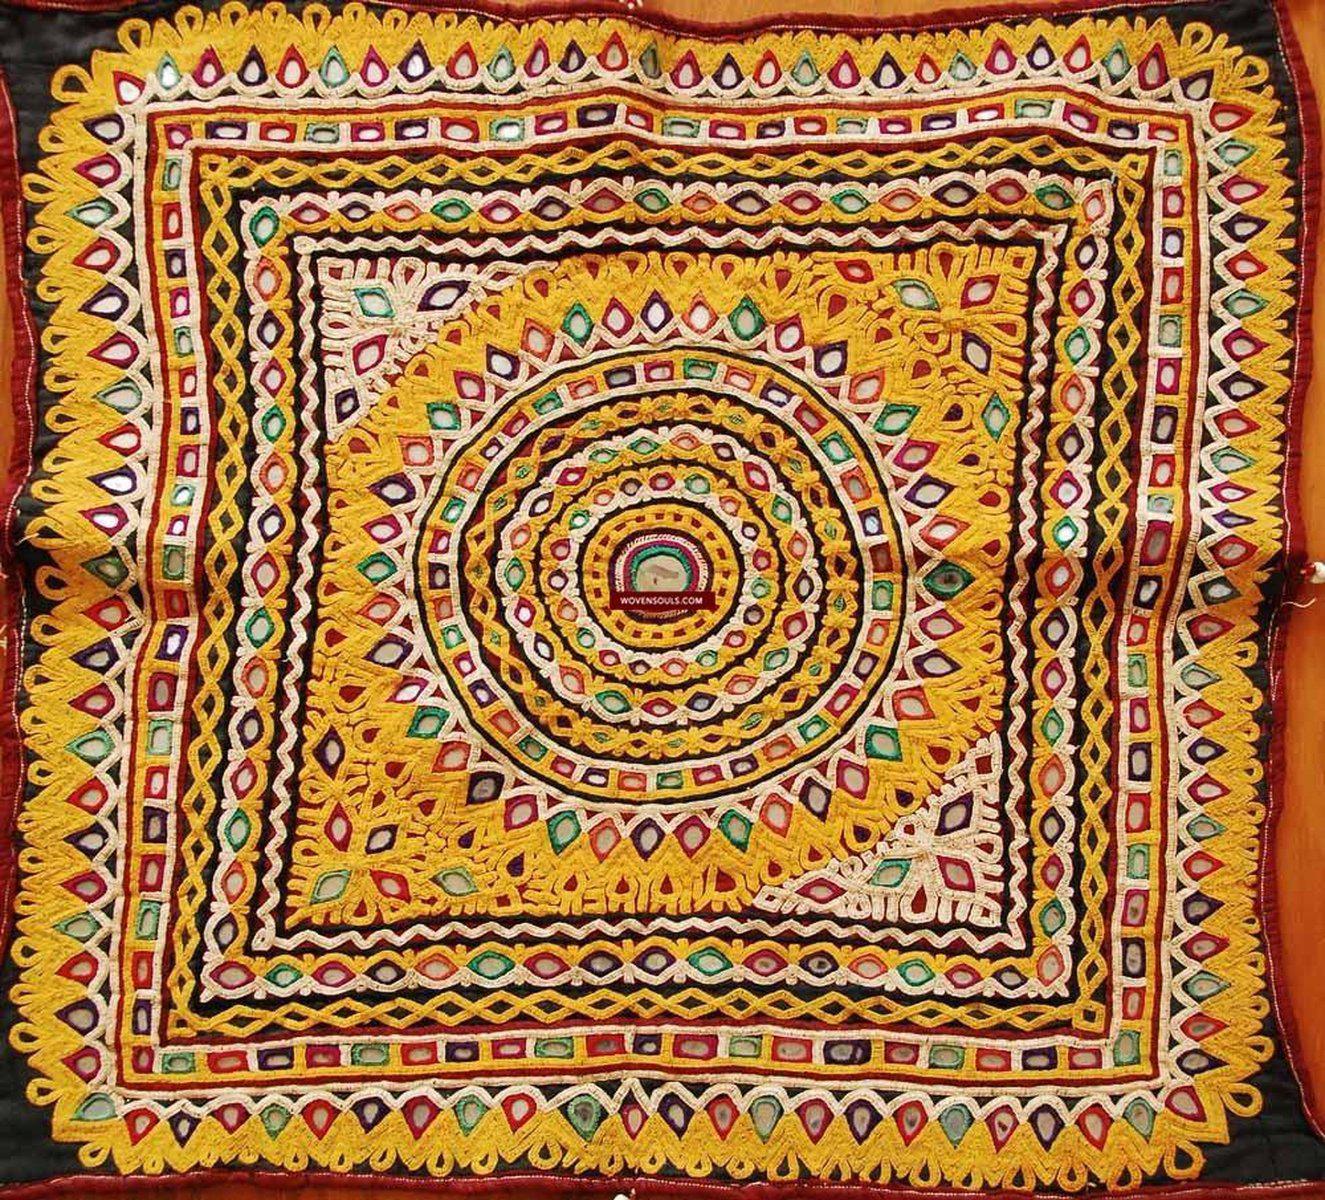 159 SOLD -Superb Golden Chaakla Pair - Antique Kutch Textile-WOVENSOULS-Antique-Vintage-Textiles-Art-Decor